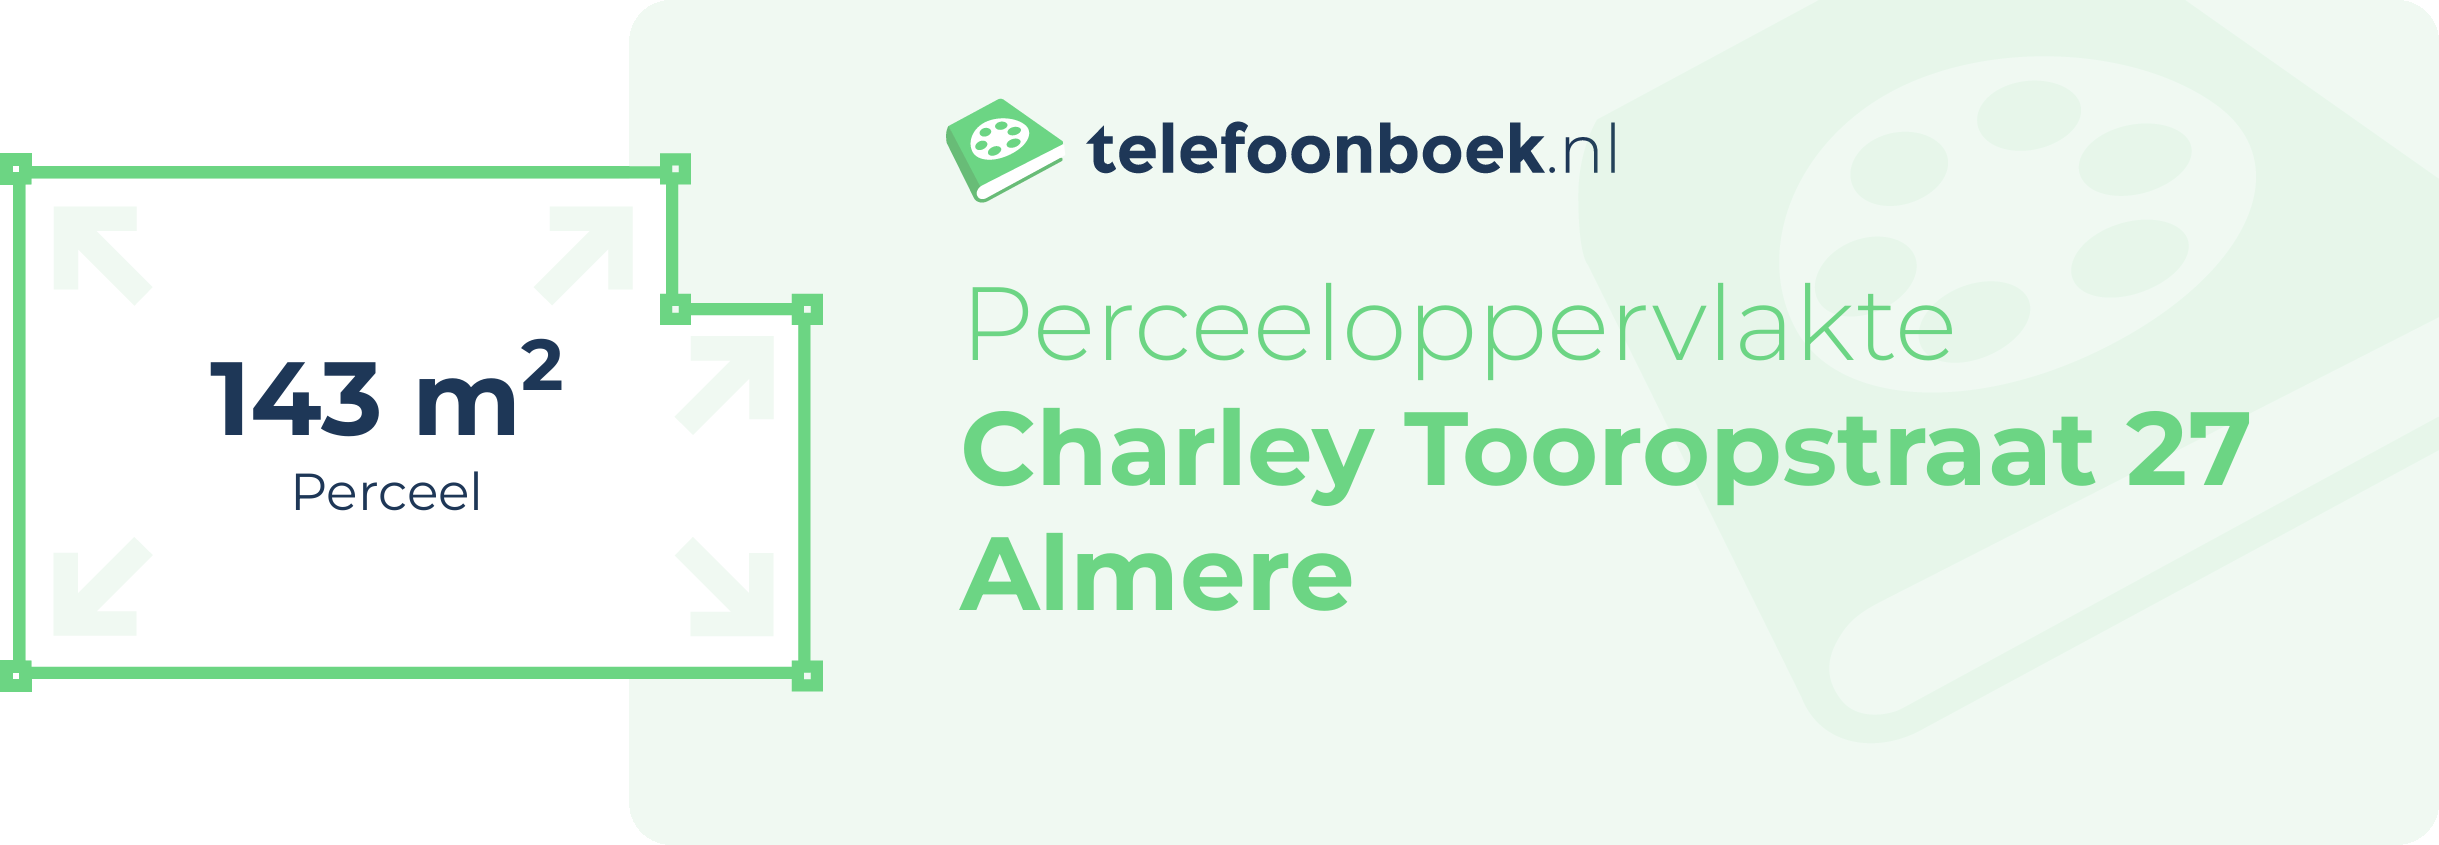 Perceeloppervlakte Charley Tooropstraat 27 Almere